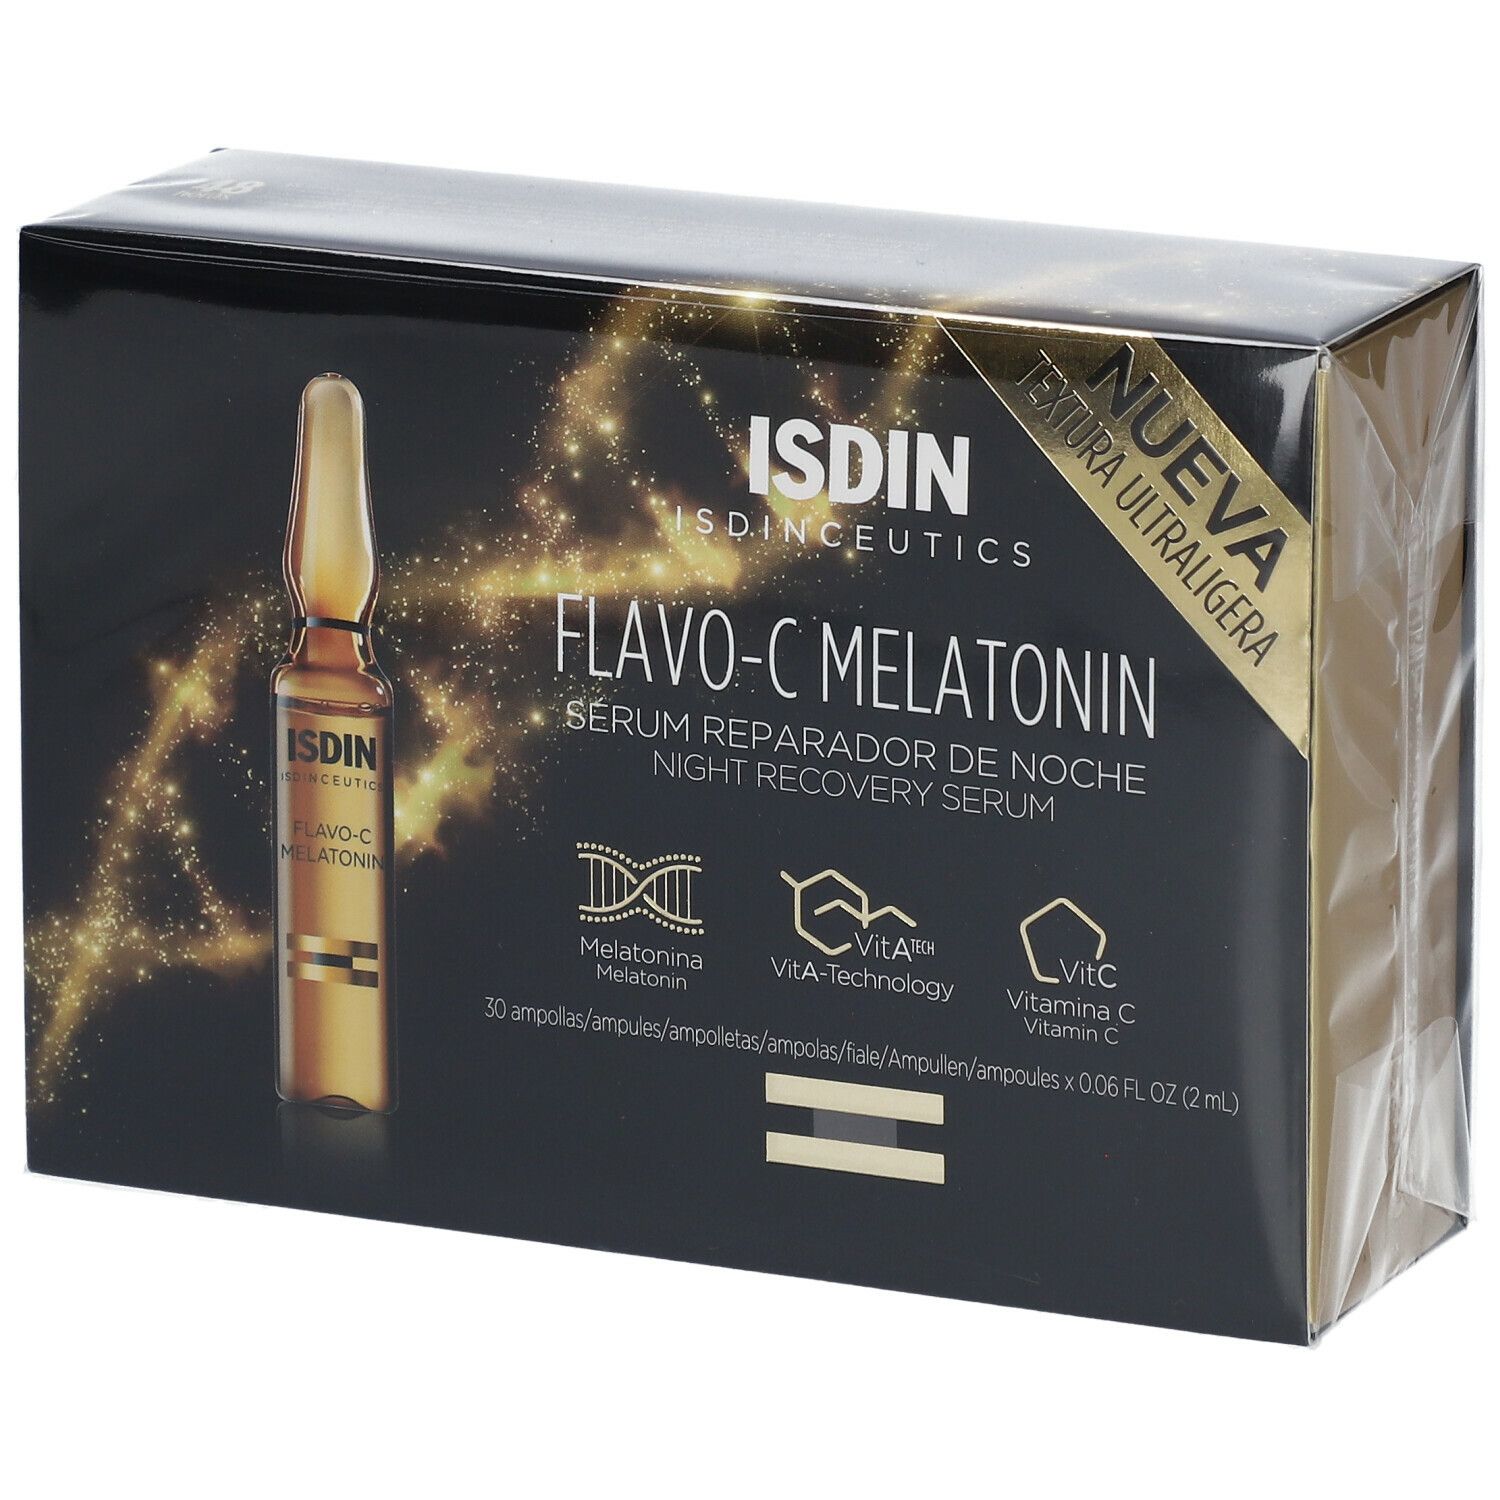 ISDIN Isdinceutics Flavo-C Melatonin Sérum réparateur de nuit